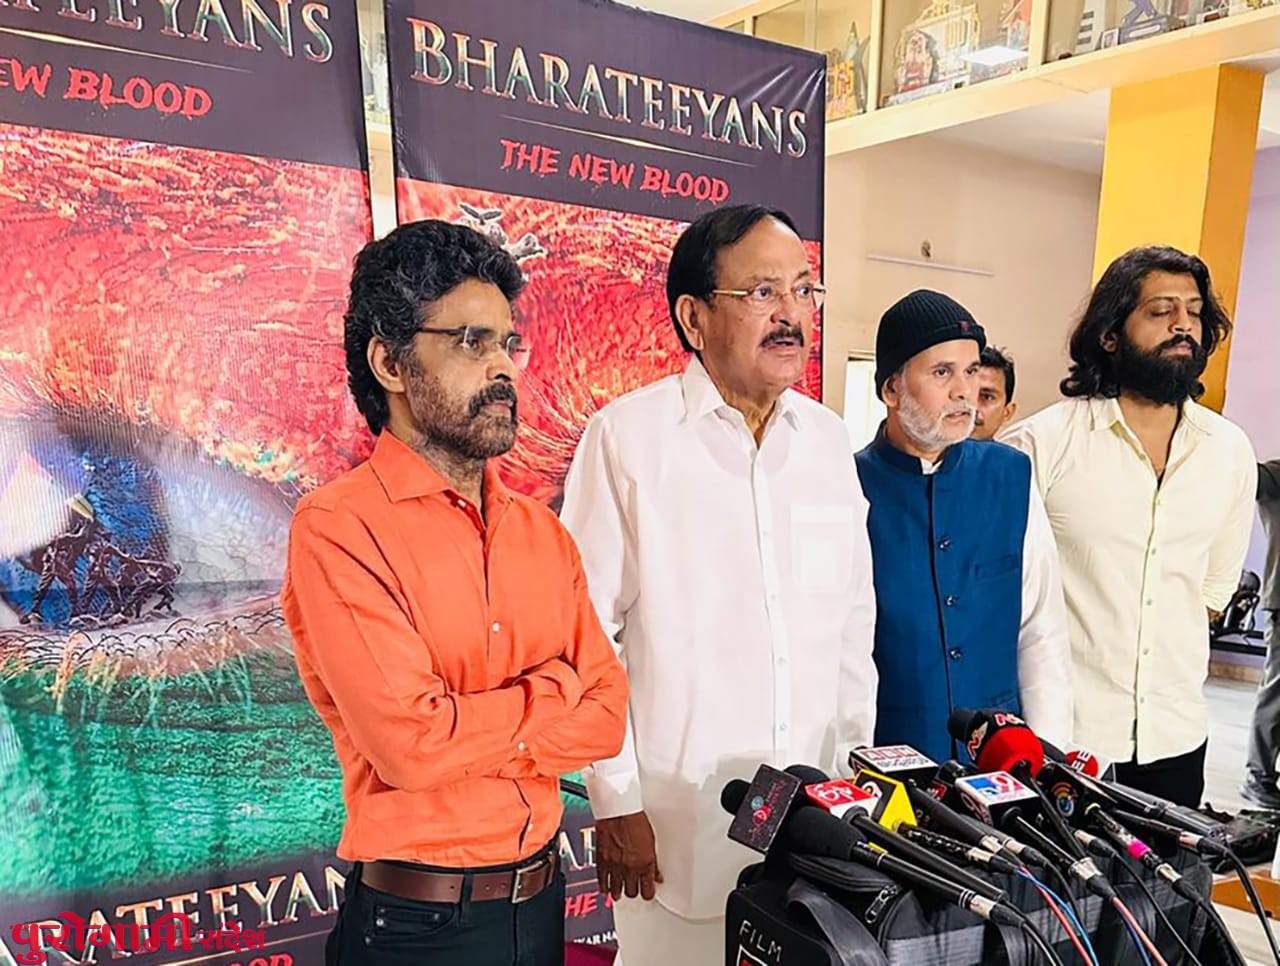 निर्माता शंकर नायडू की फिल्म ‘भारतीयन्स’ भारतीय शहीदों को देगी साहसी श्रद्धांजलि